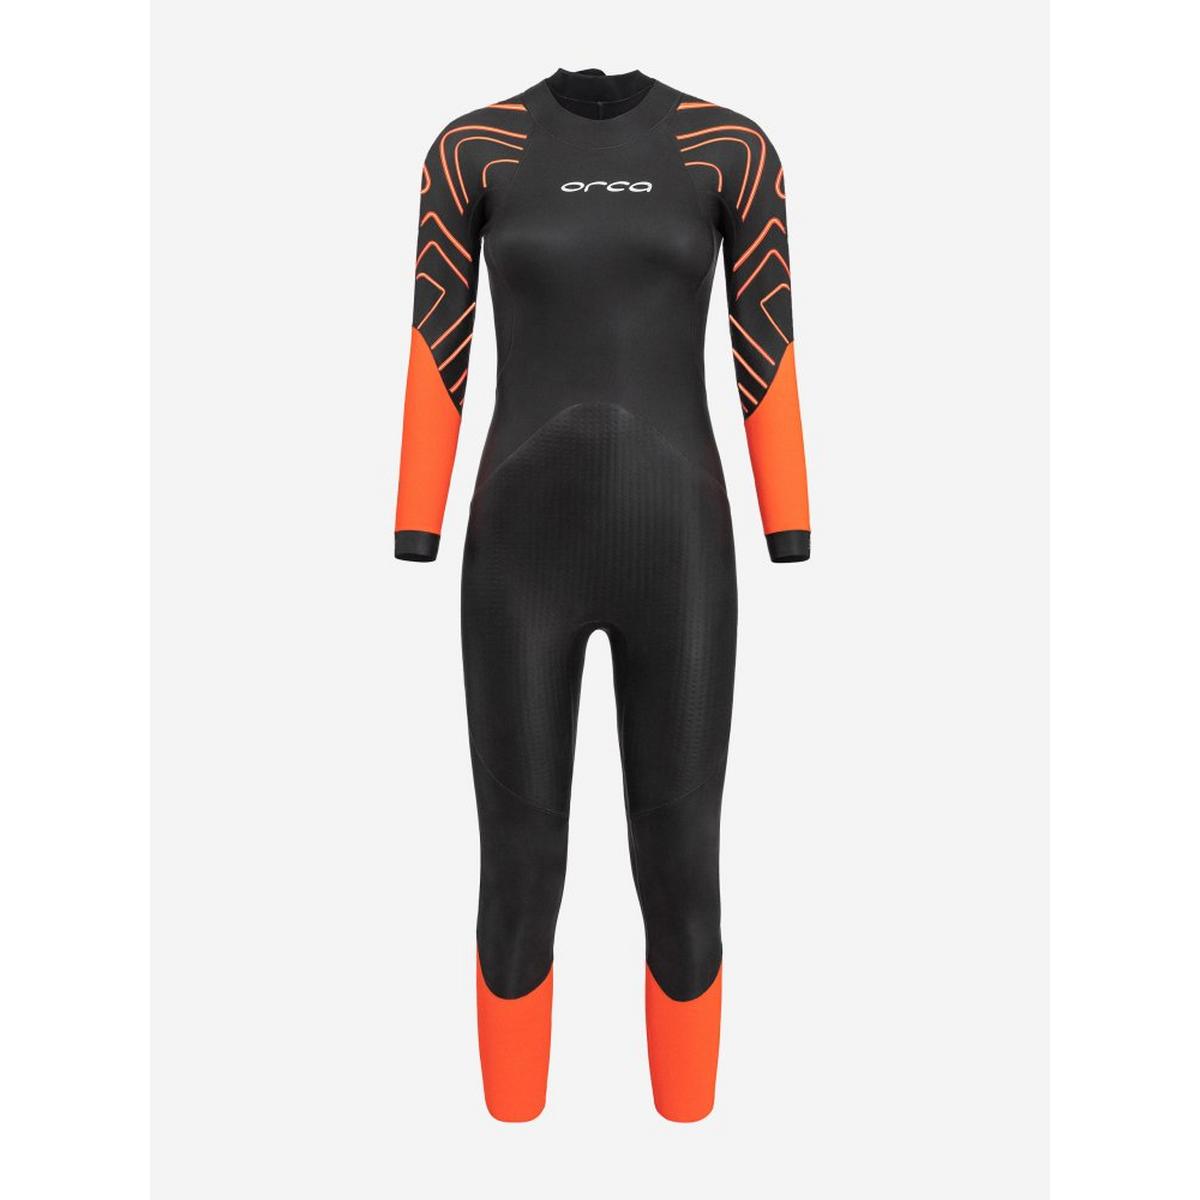 Orca Women's Zeal Hi-Vis Openwater Swim Wetsuit - Orange